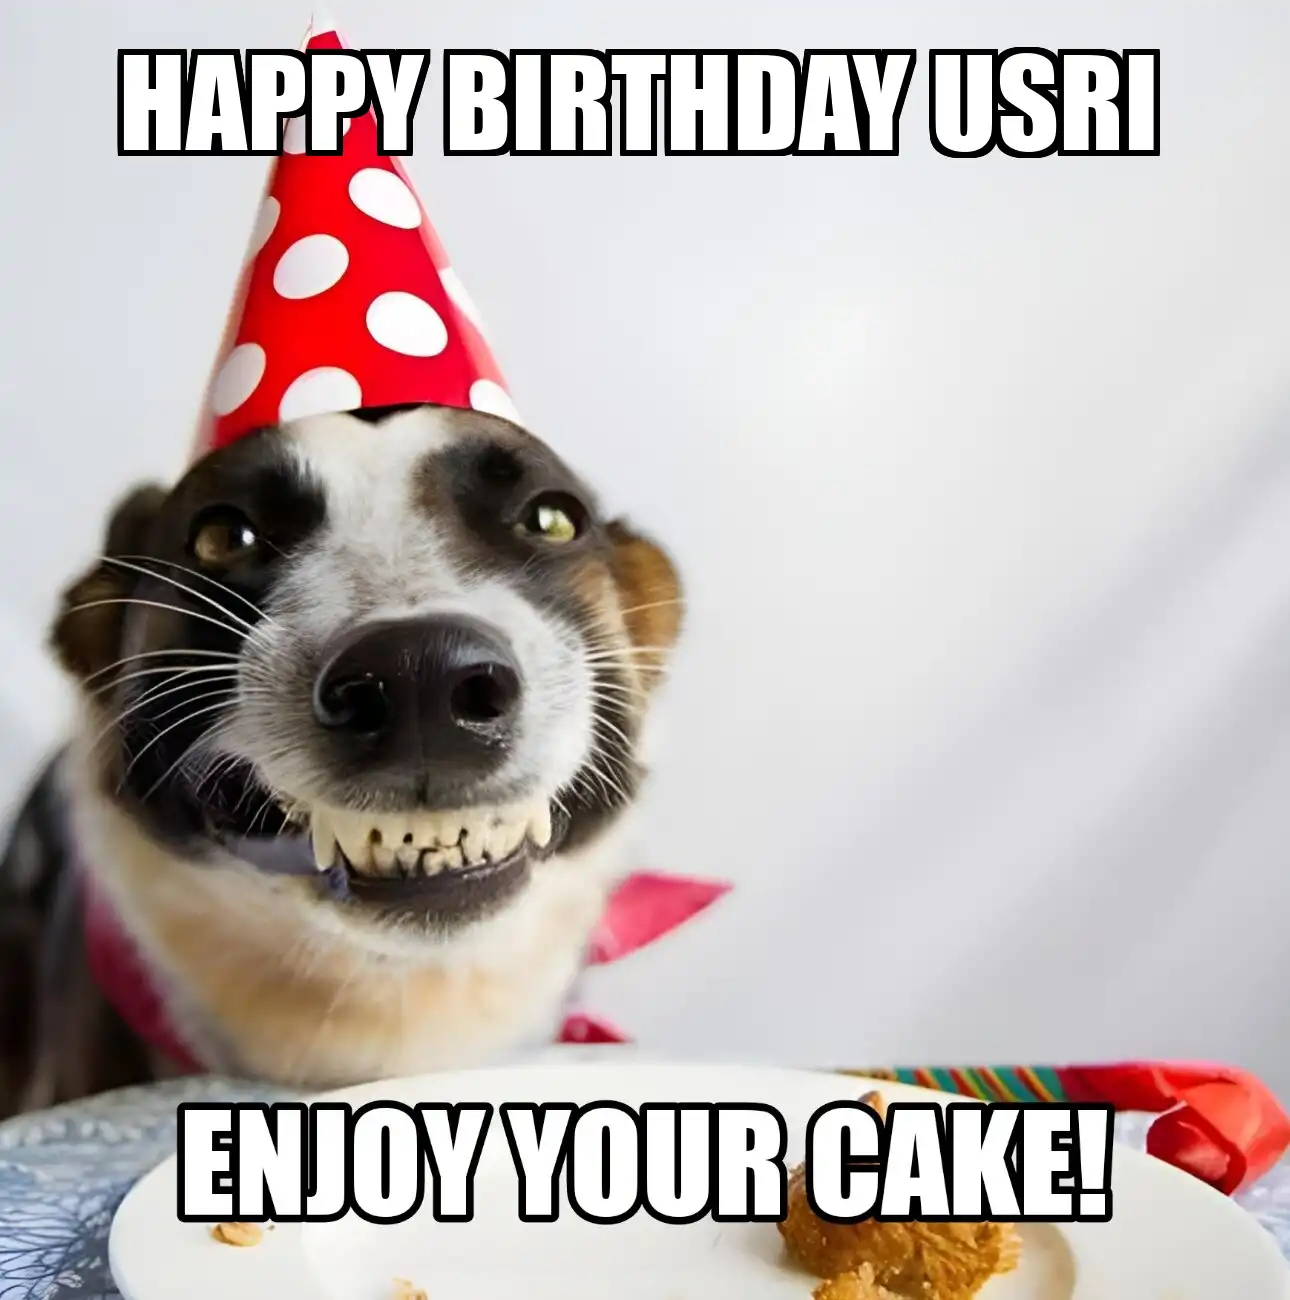 Happy Birthday Usri Enjoy Your Cake Dog Meme